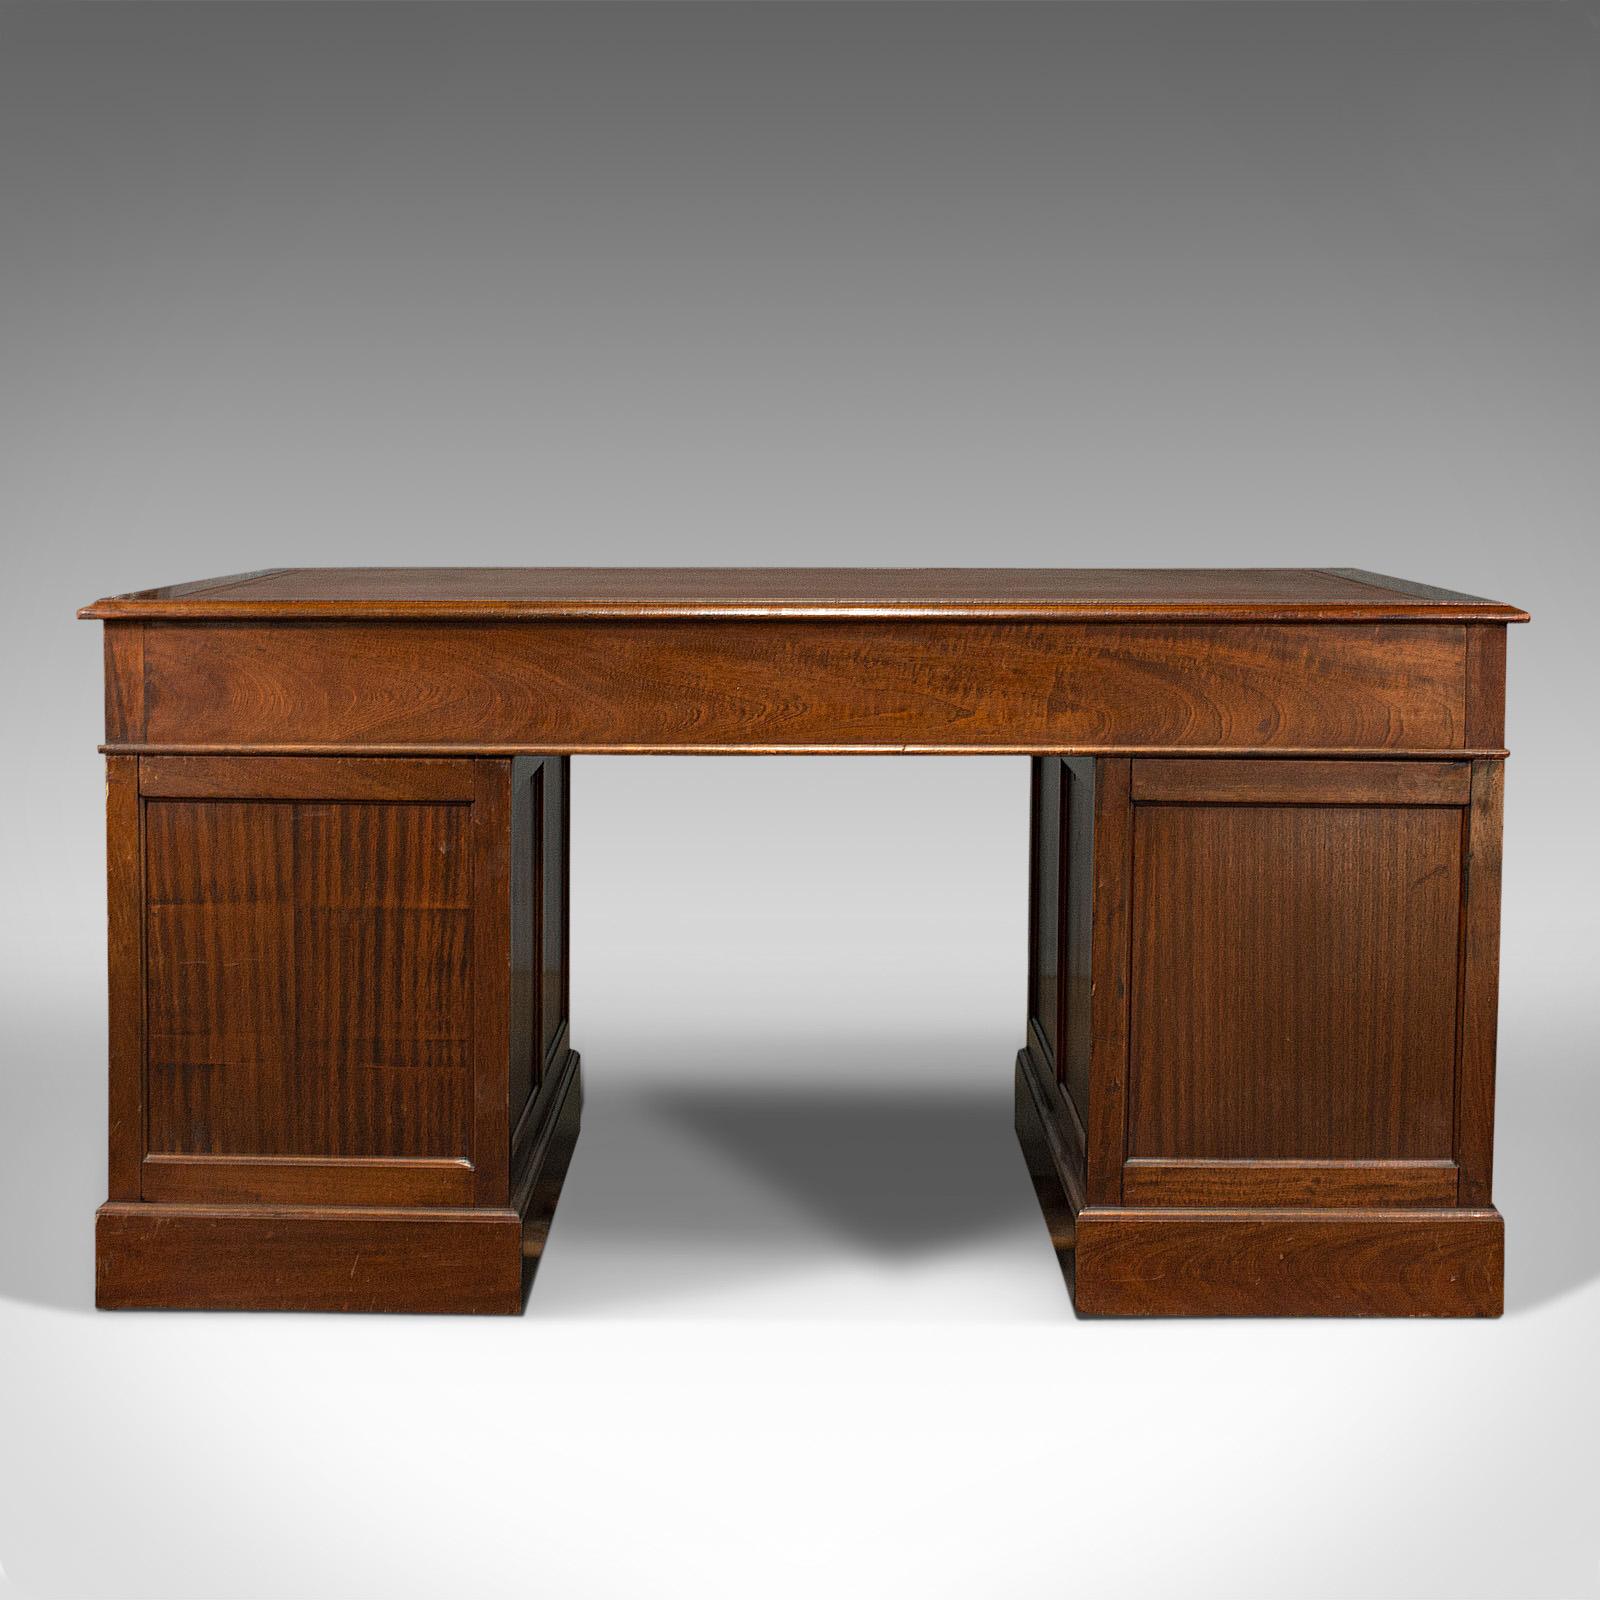 Antique Partner's Desk, English, Mahogany, Leather, Writing Table, Edwardian 1